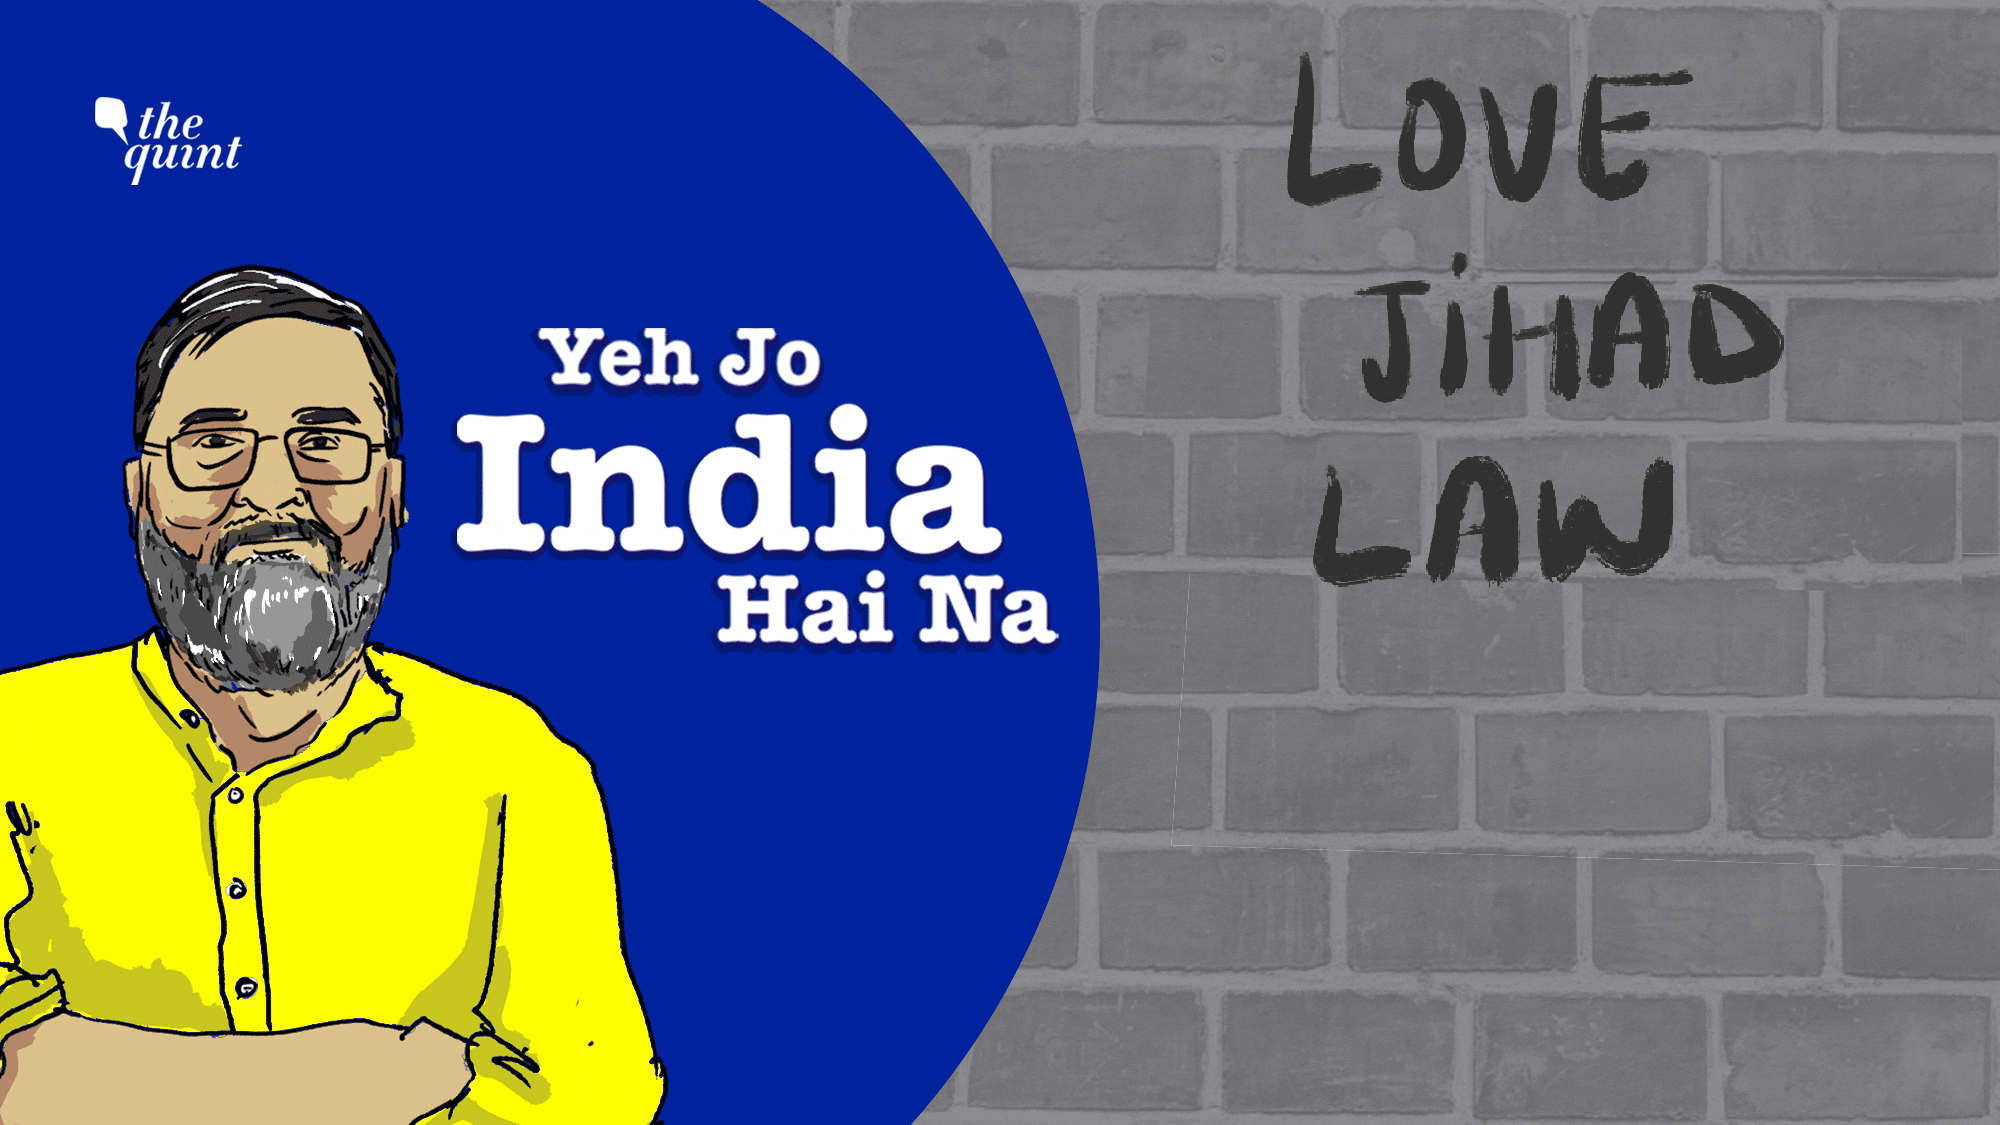 Yeh Jo India Hai Na: Love Jihad Law